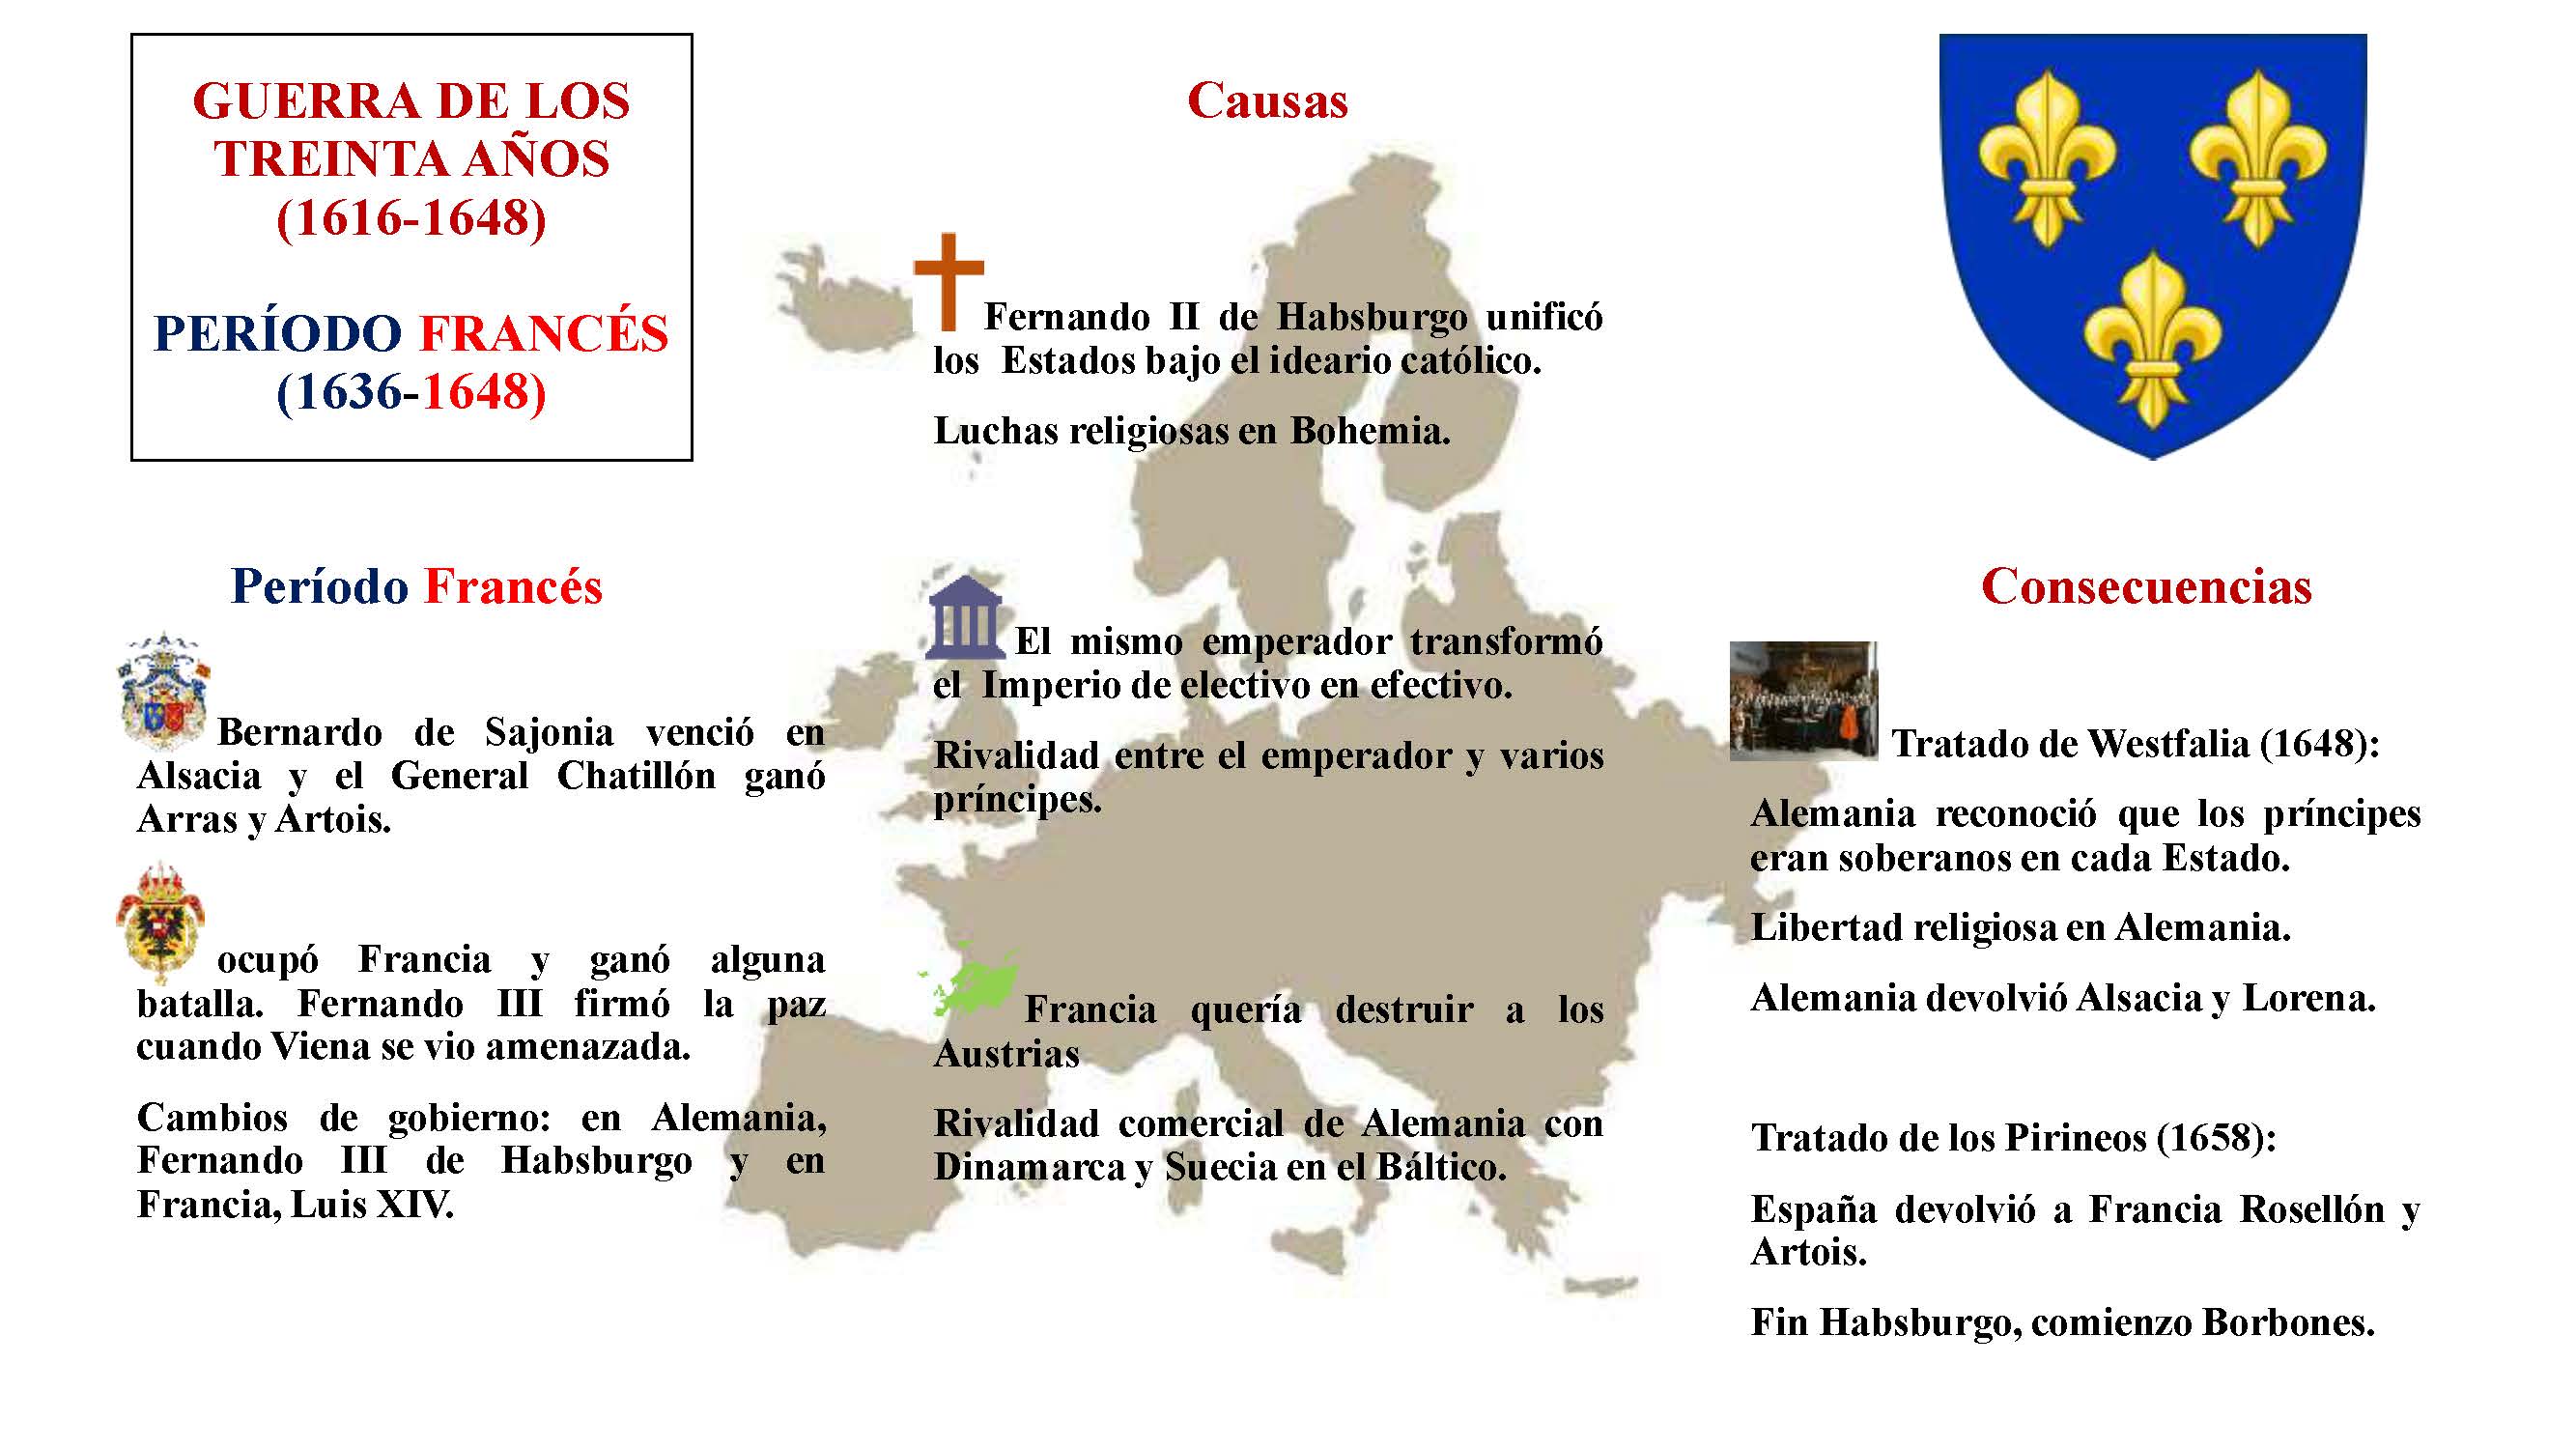 Guerra de los Treinta Años: periodo francés